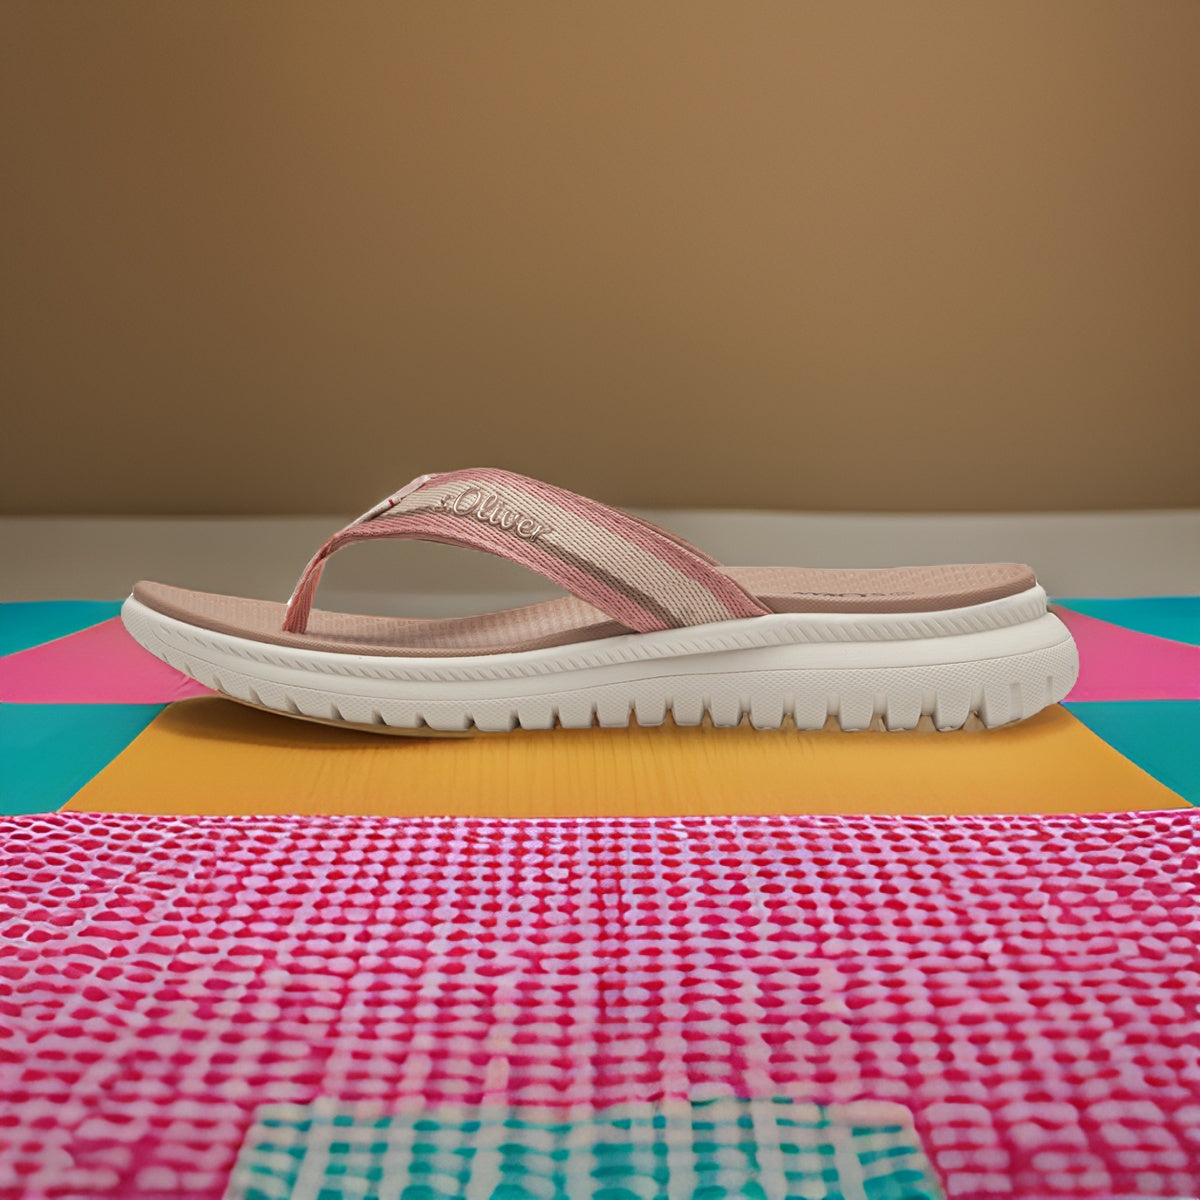 Rose Pink s.Oliver Sandals with Toe Bar - Women's Comfort Flip Flops